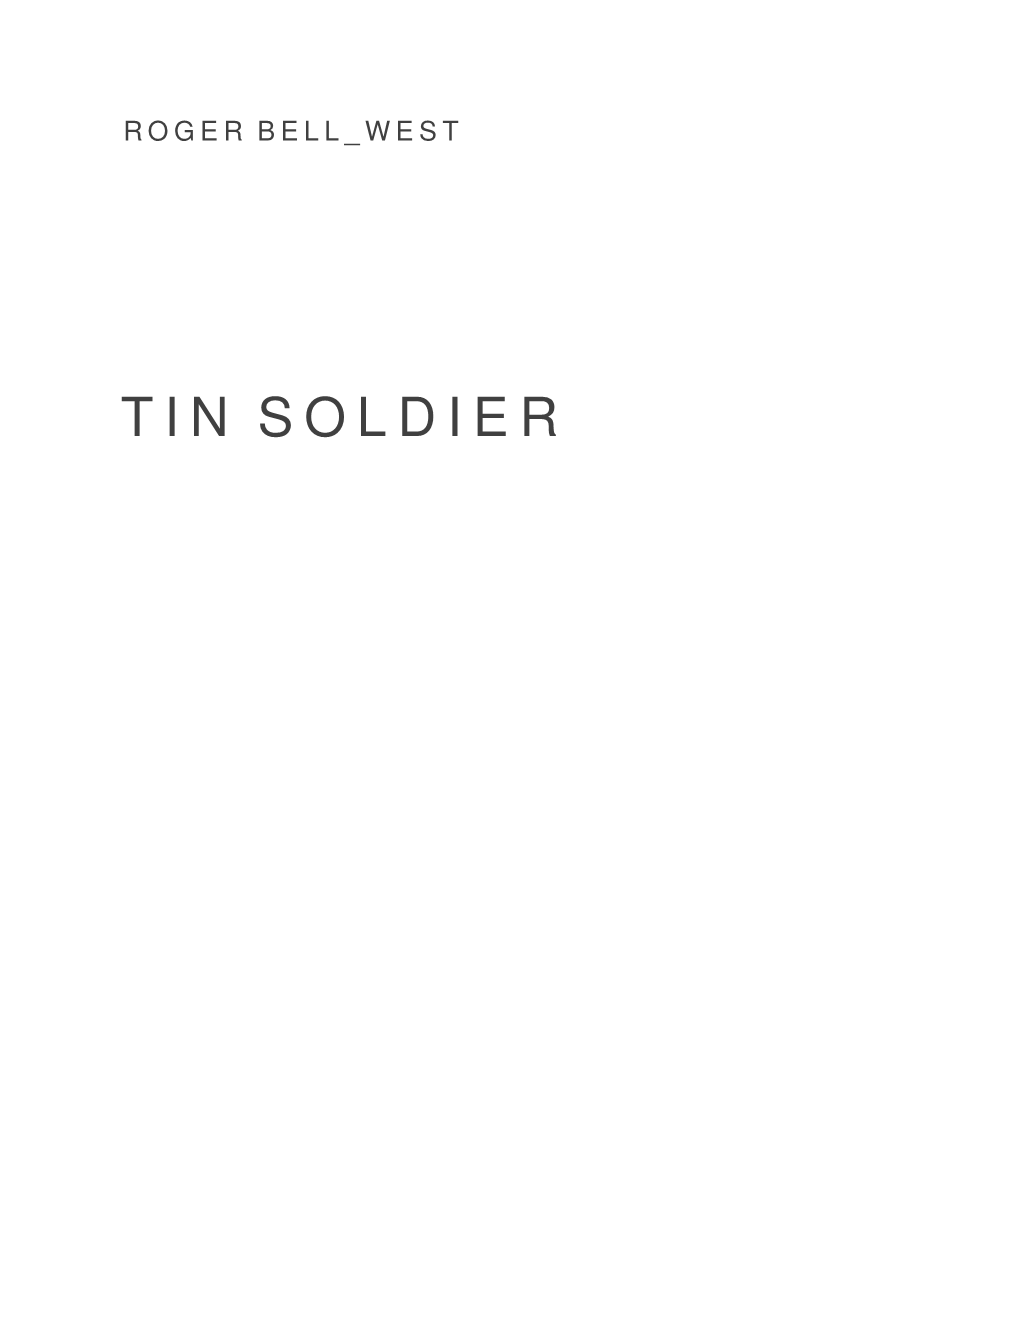 Tin Soldier 13